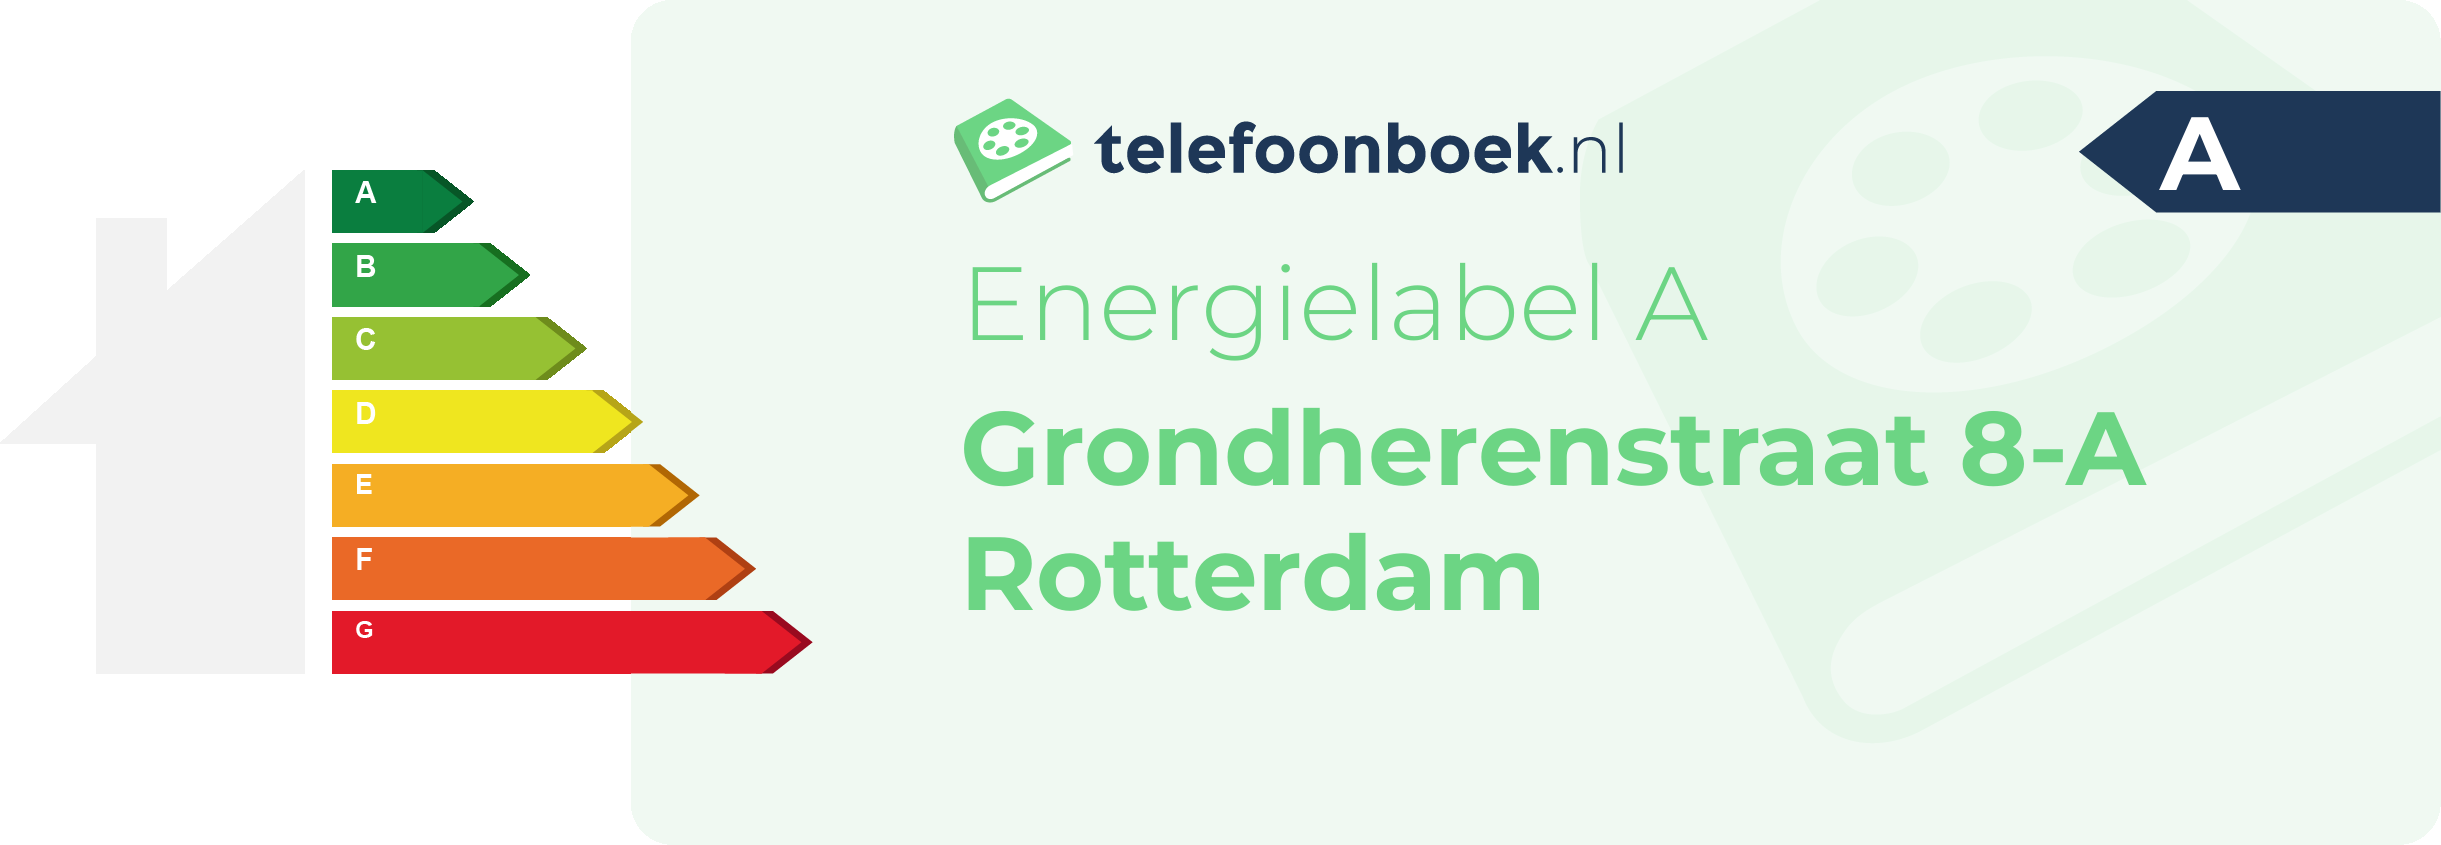 Energielabel Grondherenstraat 8-A Rotterdam